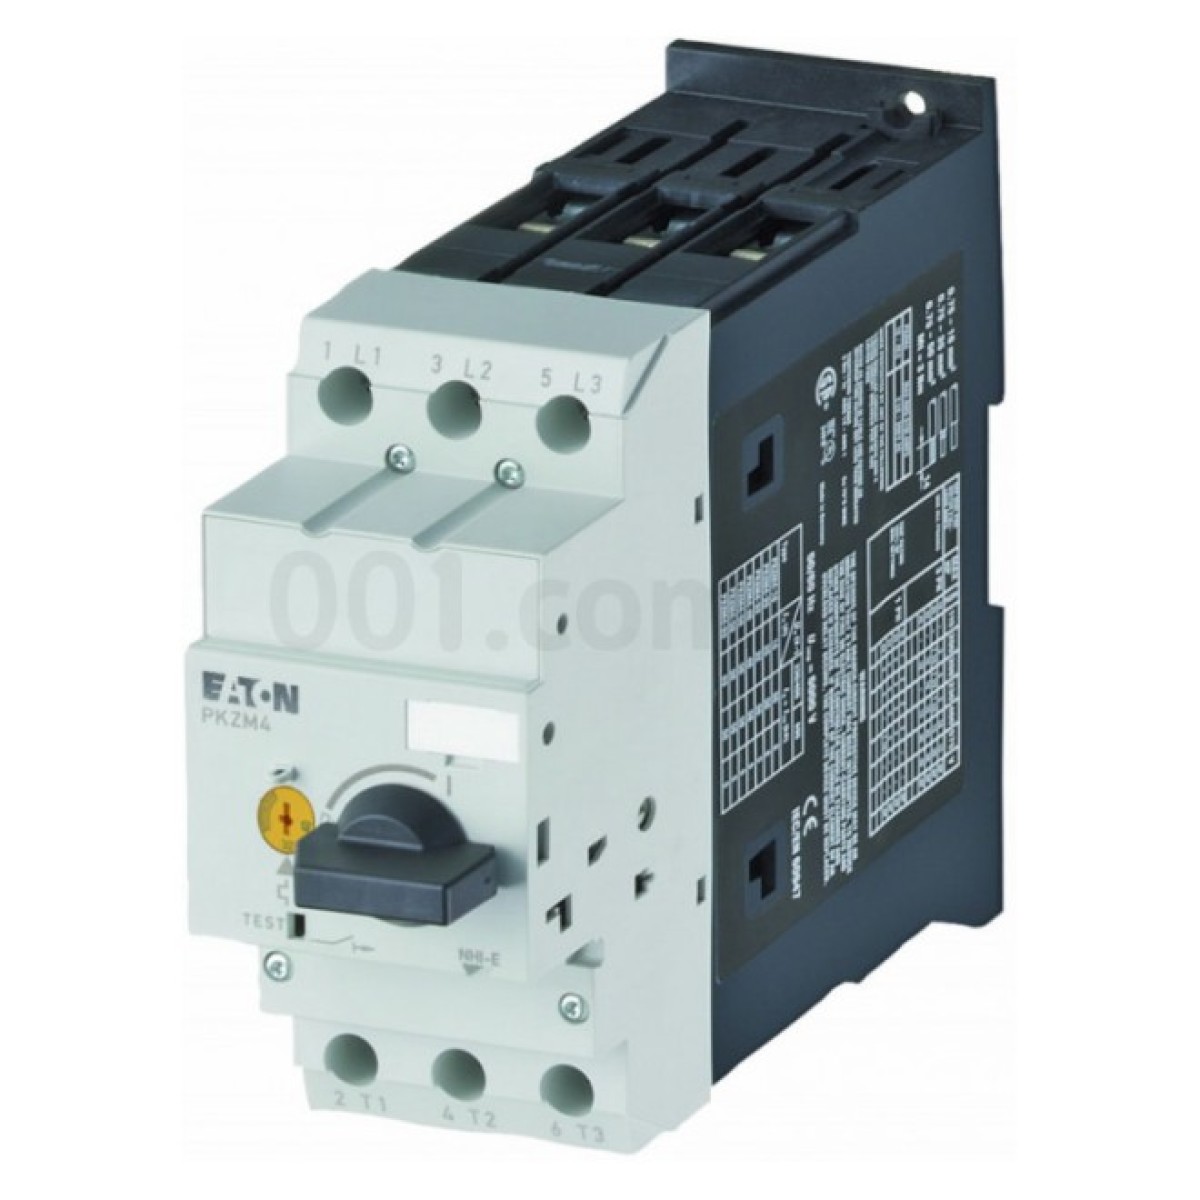 Автоматический выключатель защиты двигателя PKZM4-50 Ir=40...50А, Eaton (Moeller) 256_256.jpg